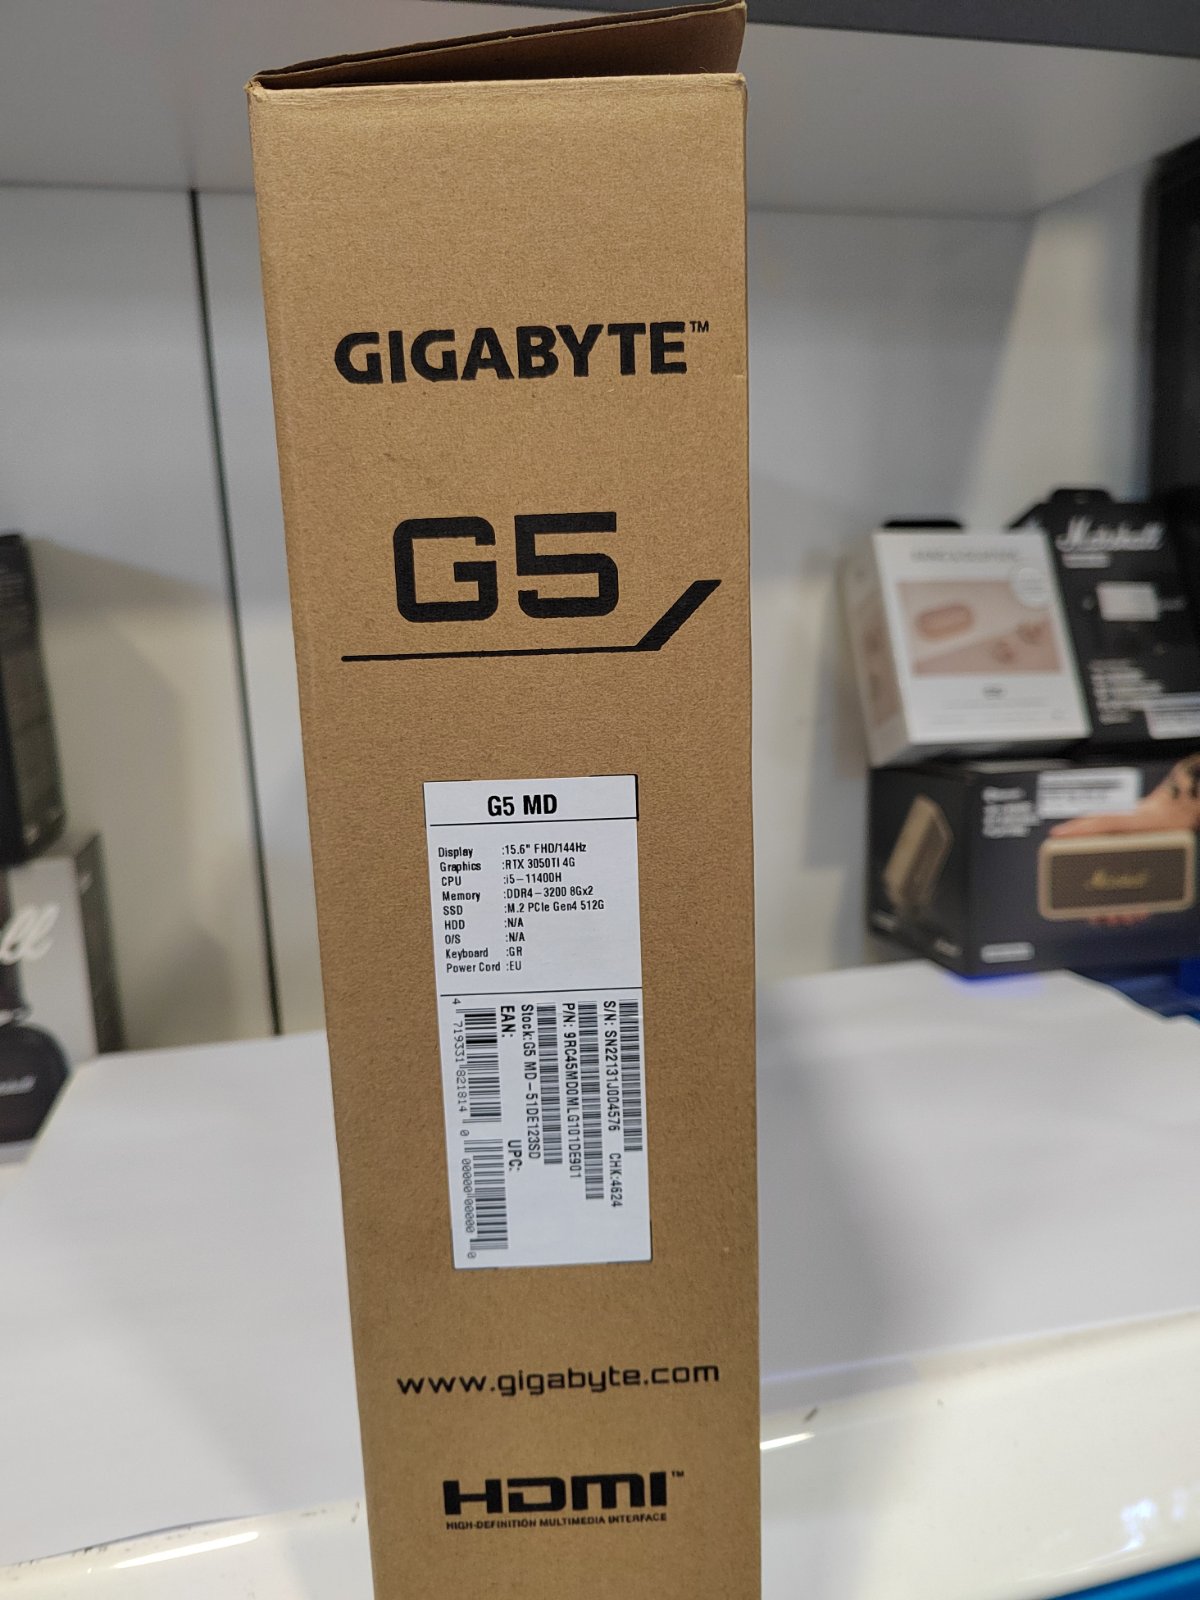 Gigabyte G5 MD GAMING!!!